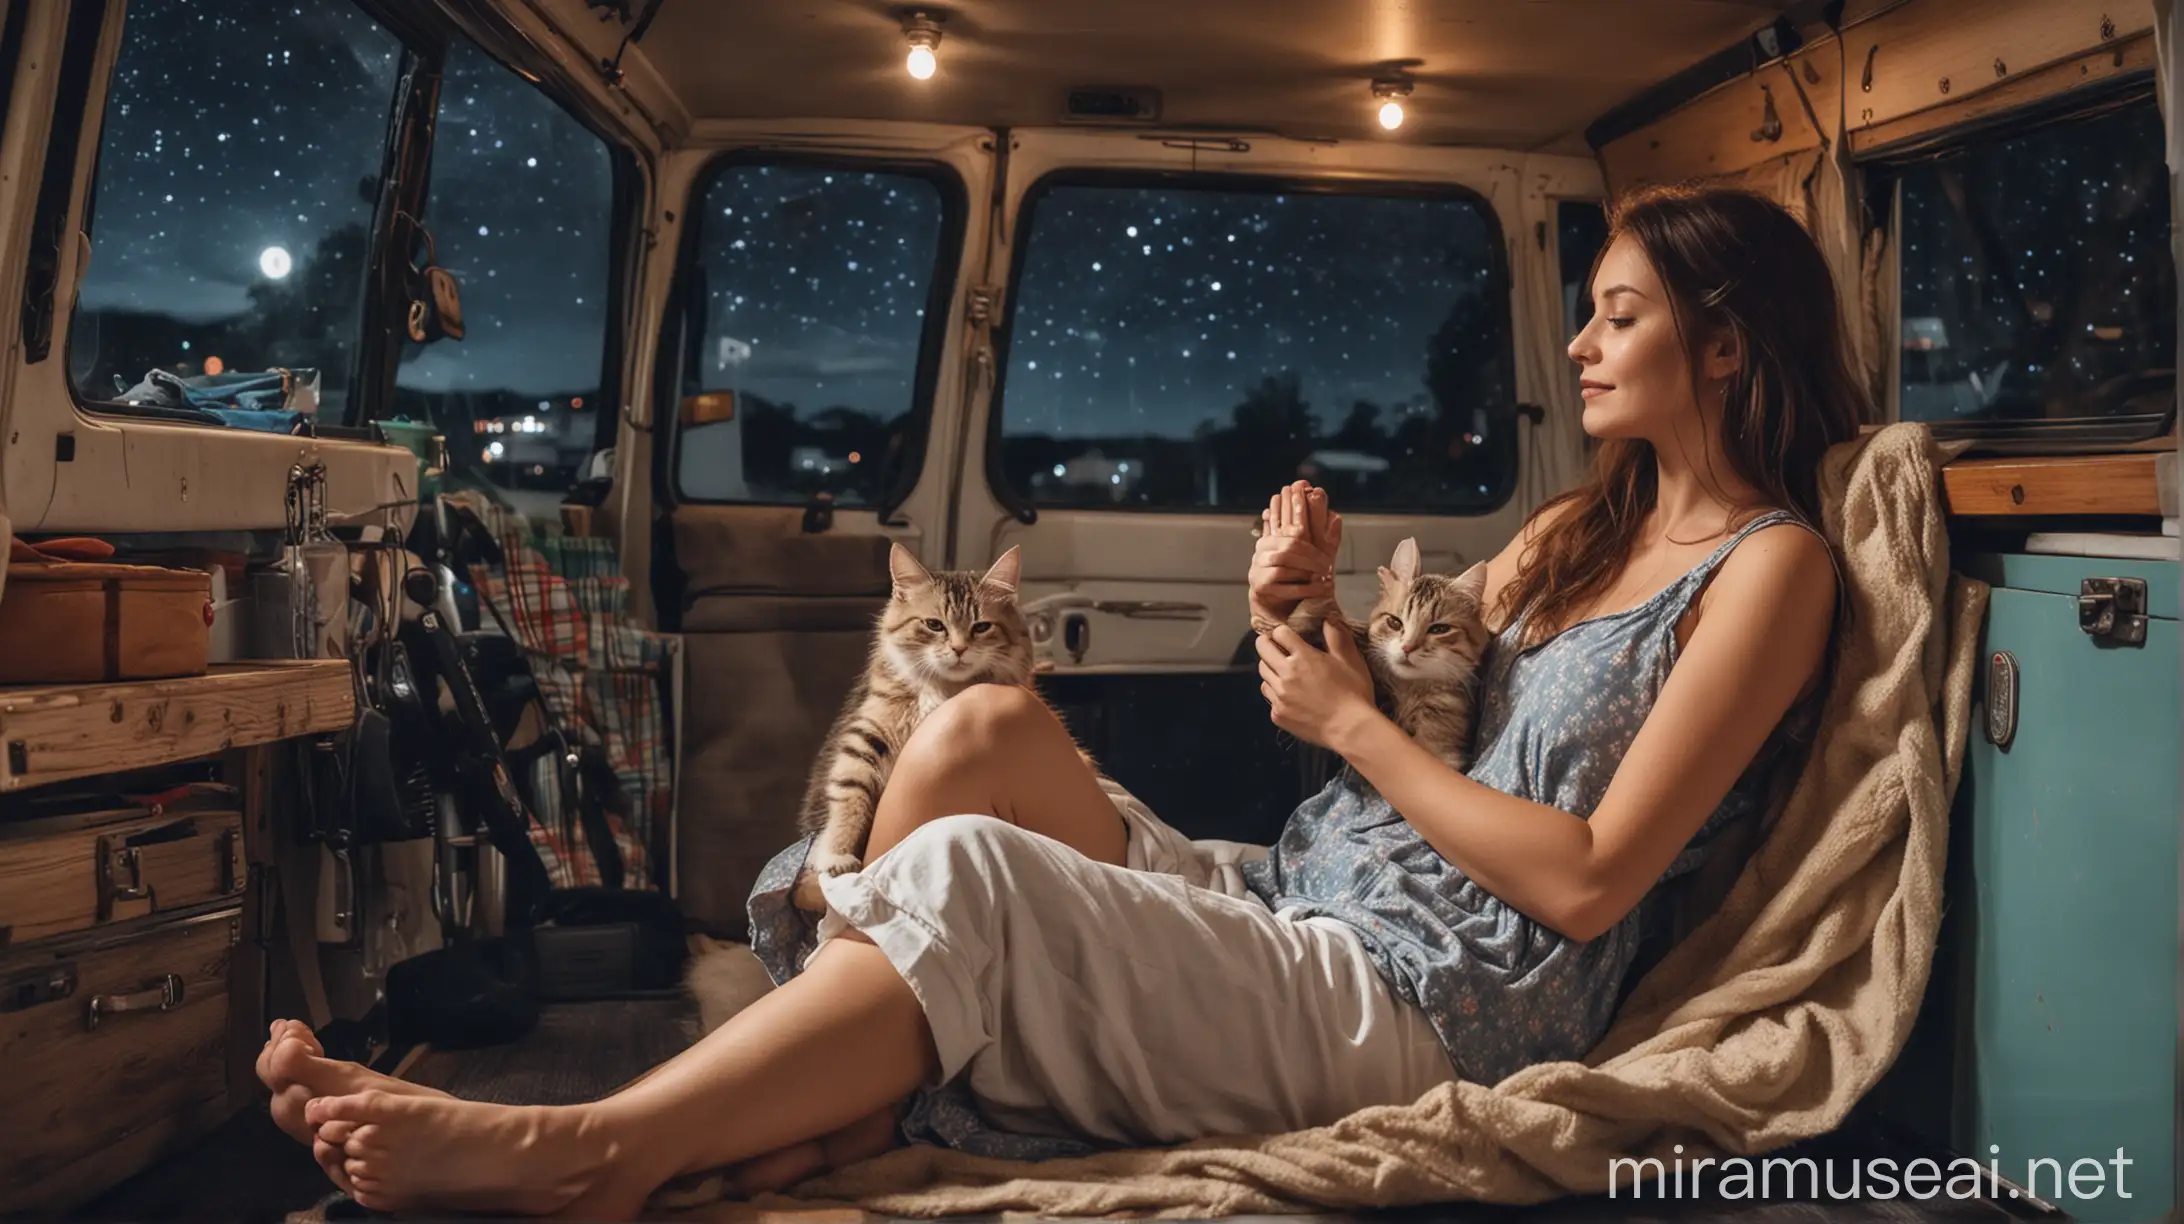 Wanita cantik kelihatan tangan dan kakinya tidur rebahan di dalam mobil campervan ditemani kucing lucu pada malam haru